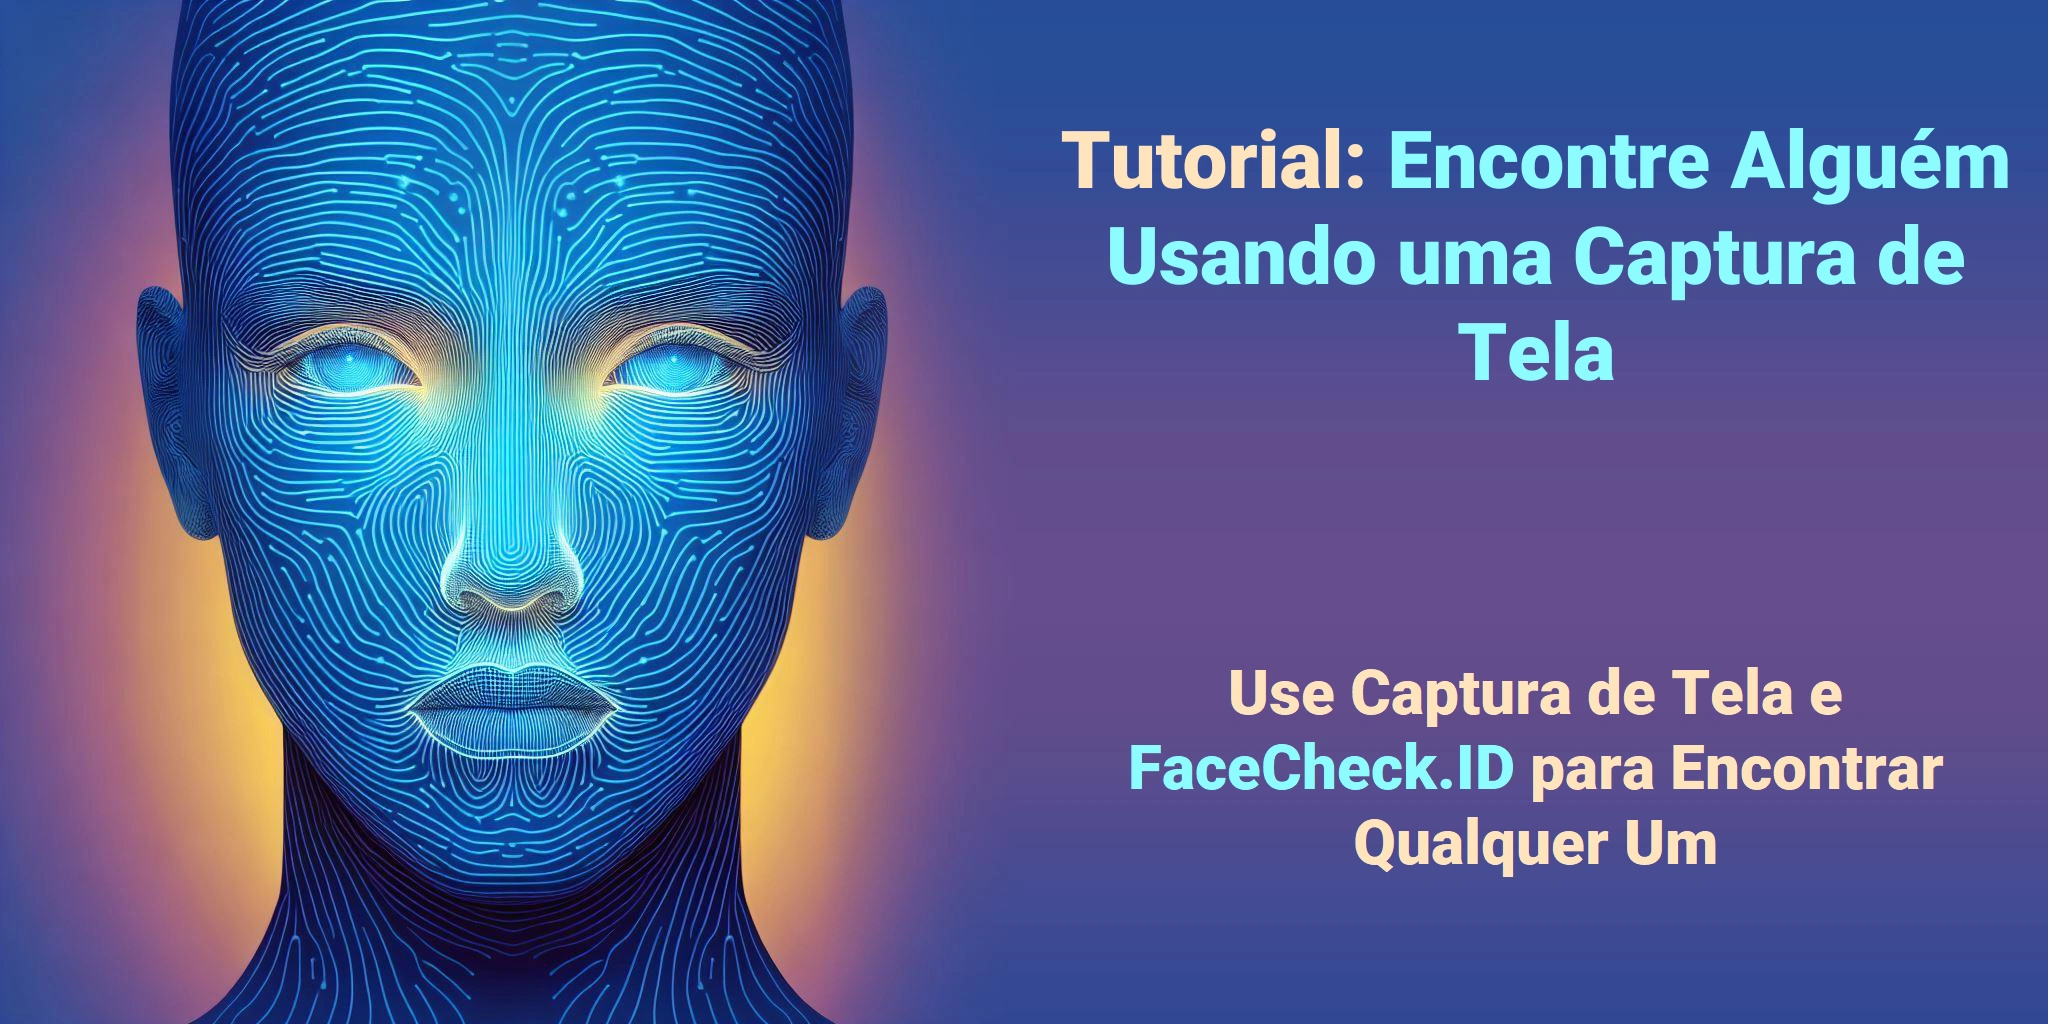 Tutorial: Encontre Alguém Usando uma Captura de Tela Use Captura de Tela e FaceCheck.ID para Encontrar Qualquer Um